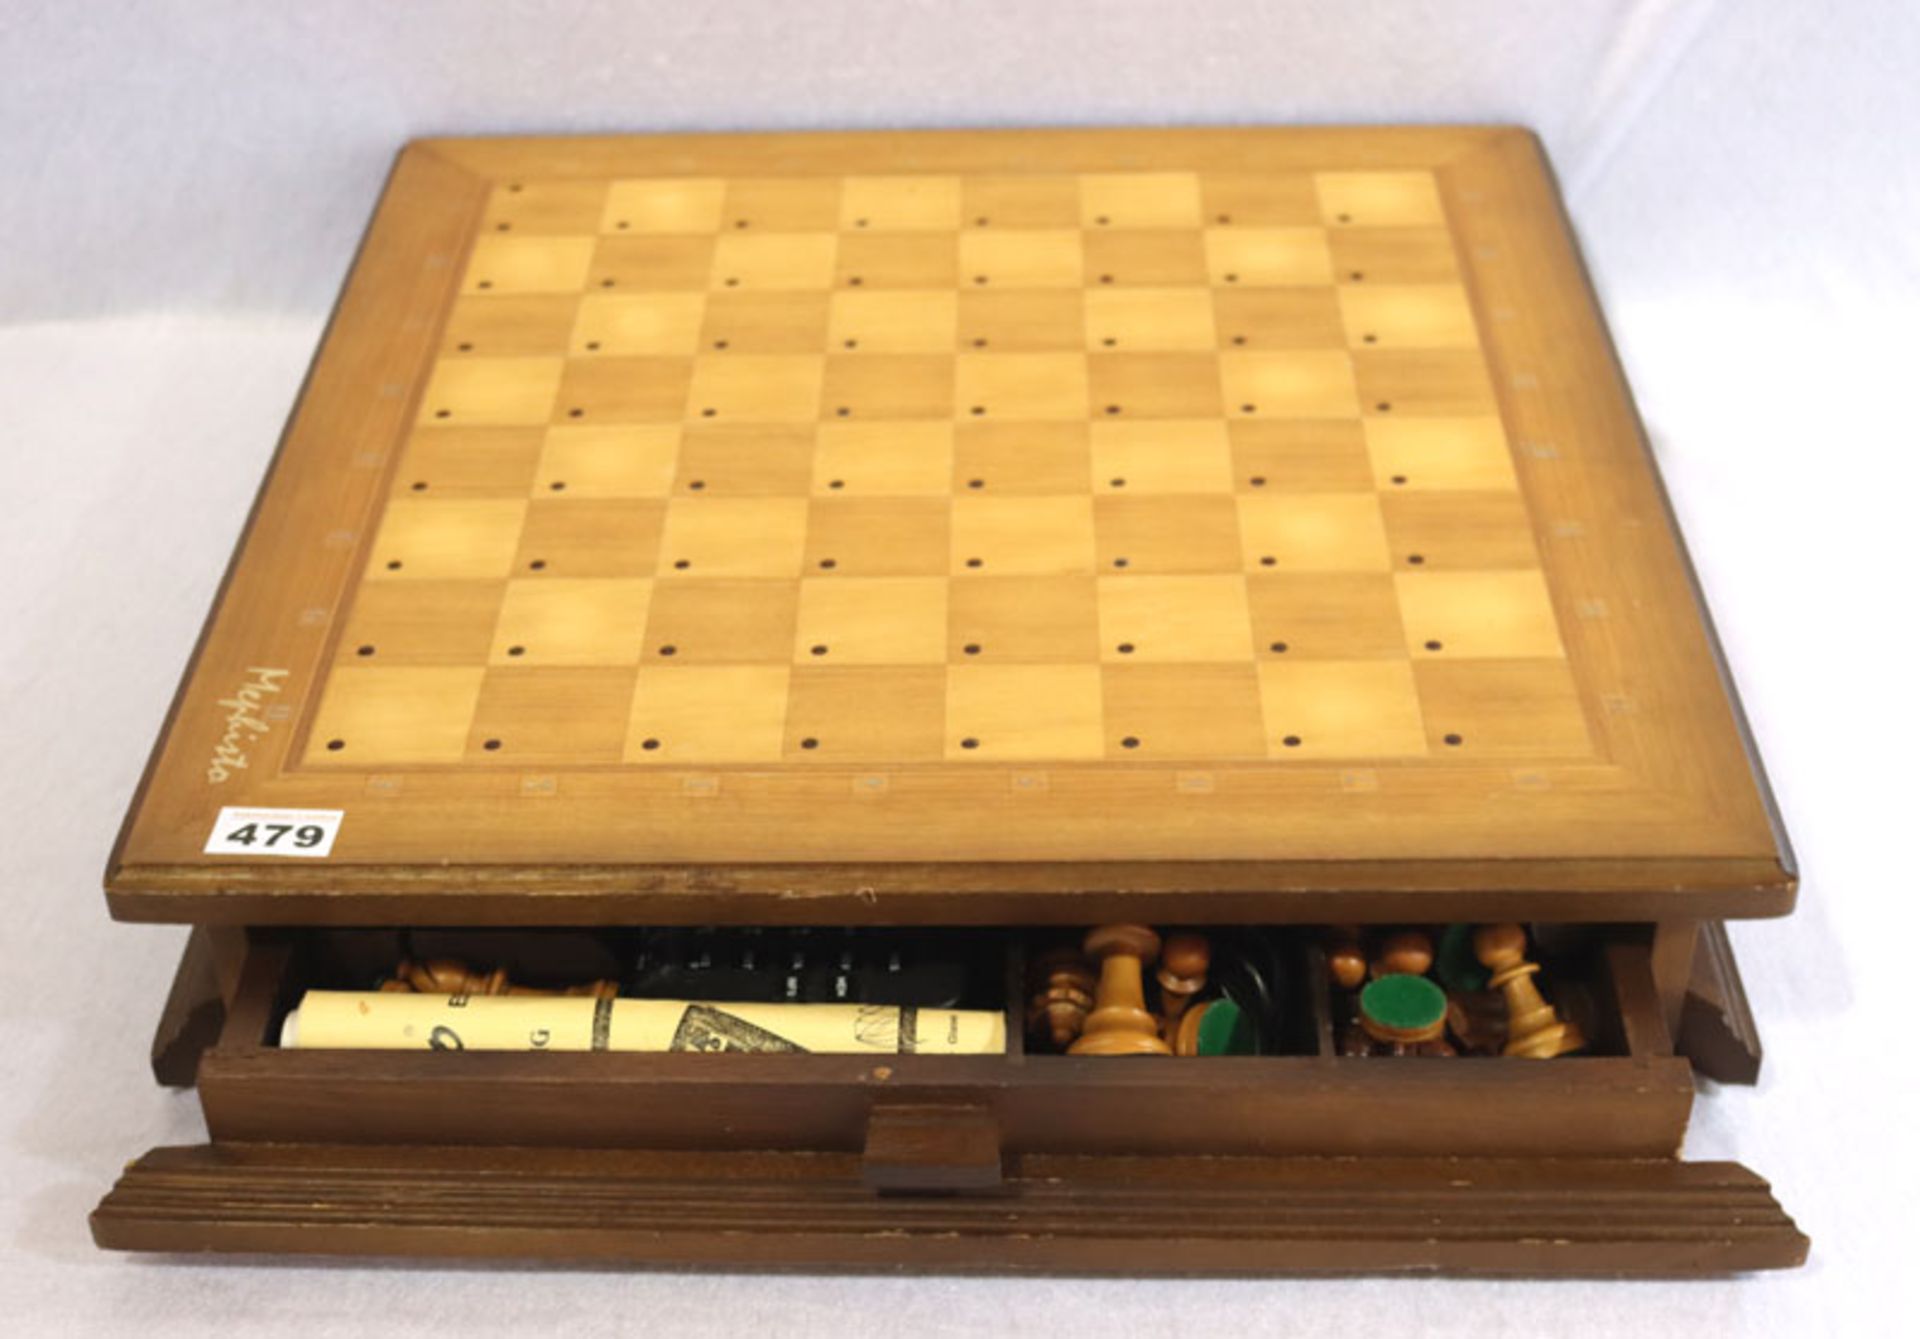 Mephisto Schachcomputer mit Sensorbrett und Spielfiguren, H 11 cm, B 51 cm, T 51 cm, Funktion und